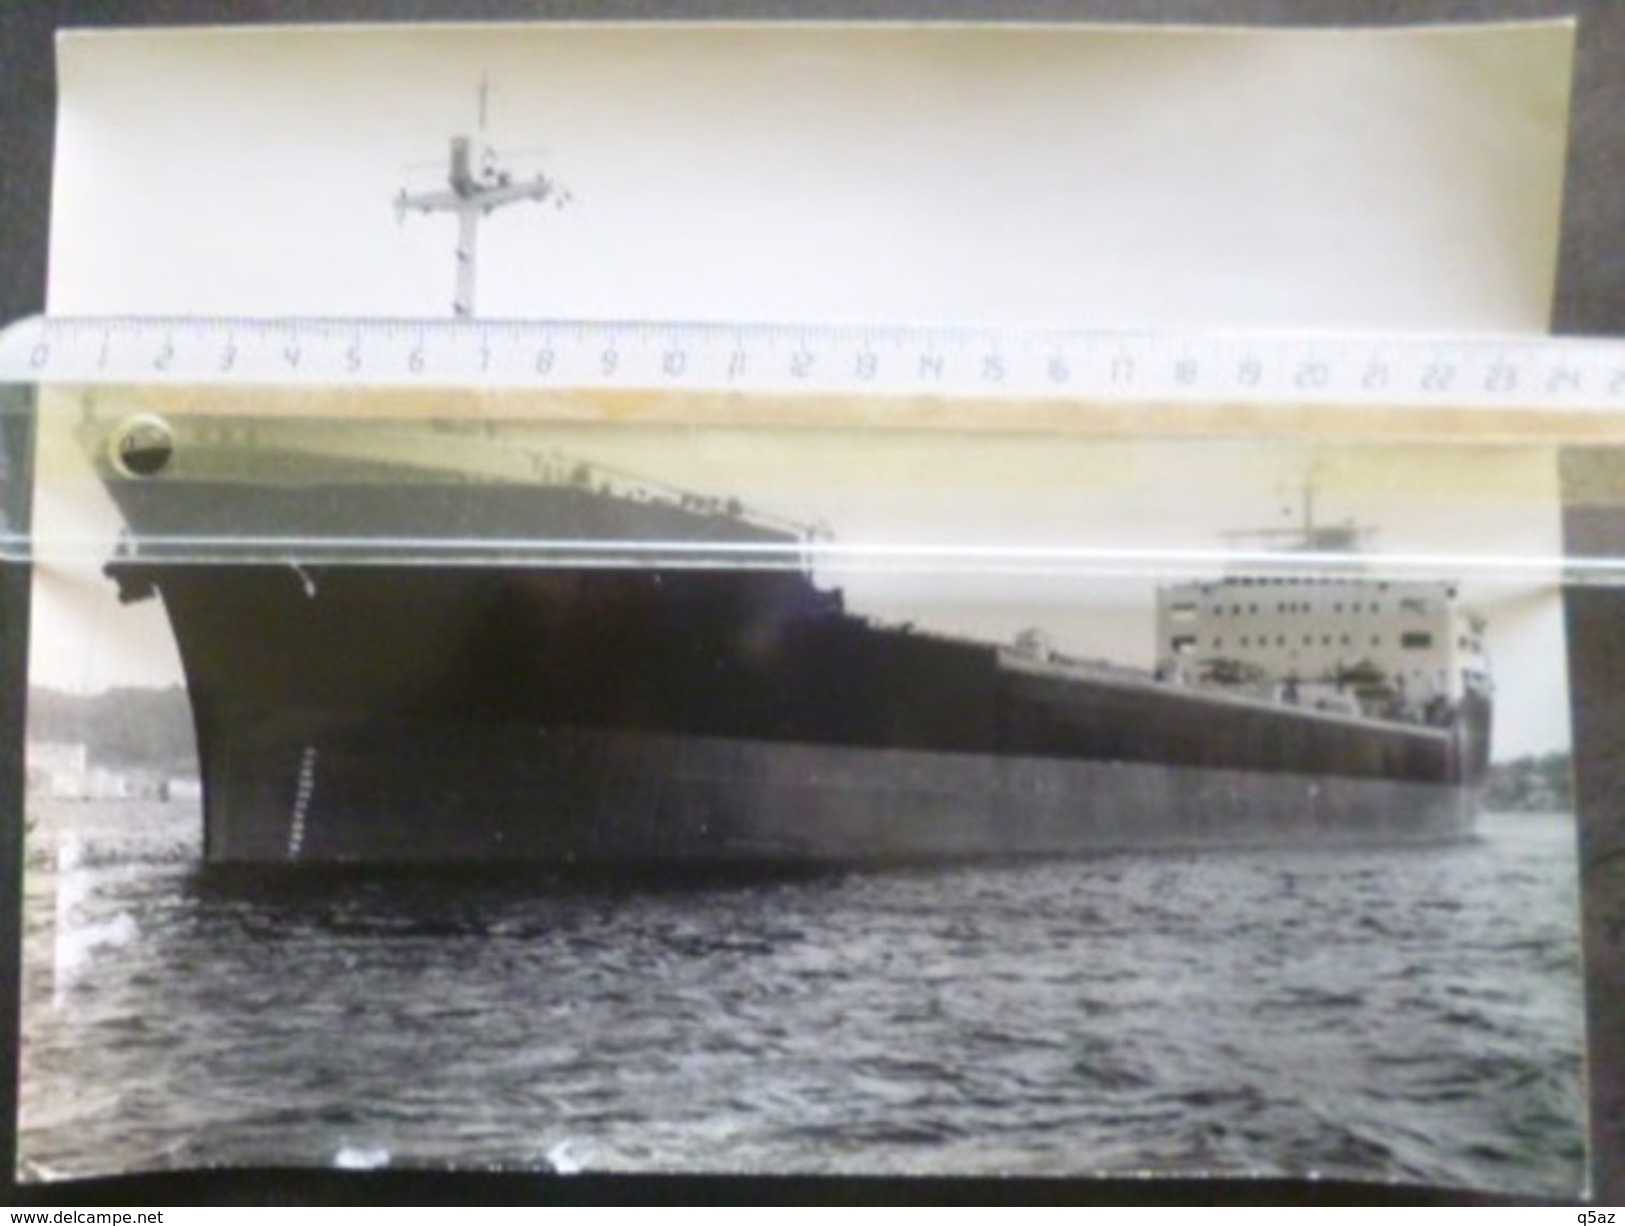 Hm1.v- Mineralier LENS 1959 La Seyne UIM 18x24cm Union Industrielle Maritime - Boats